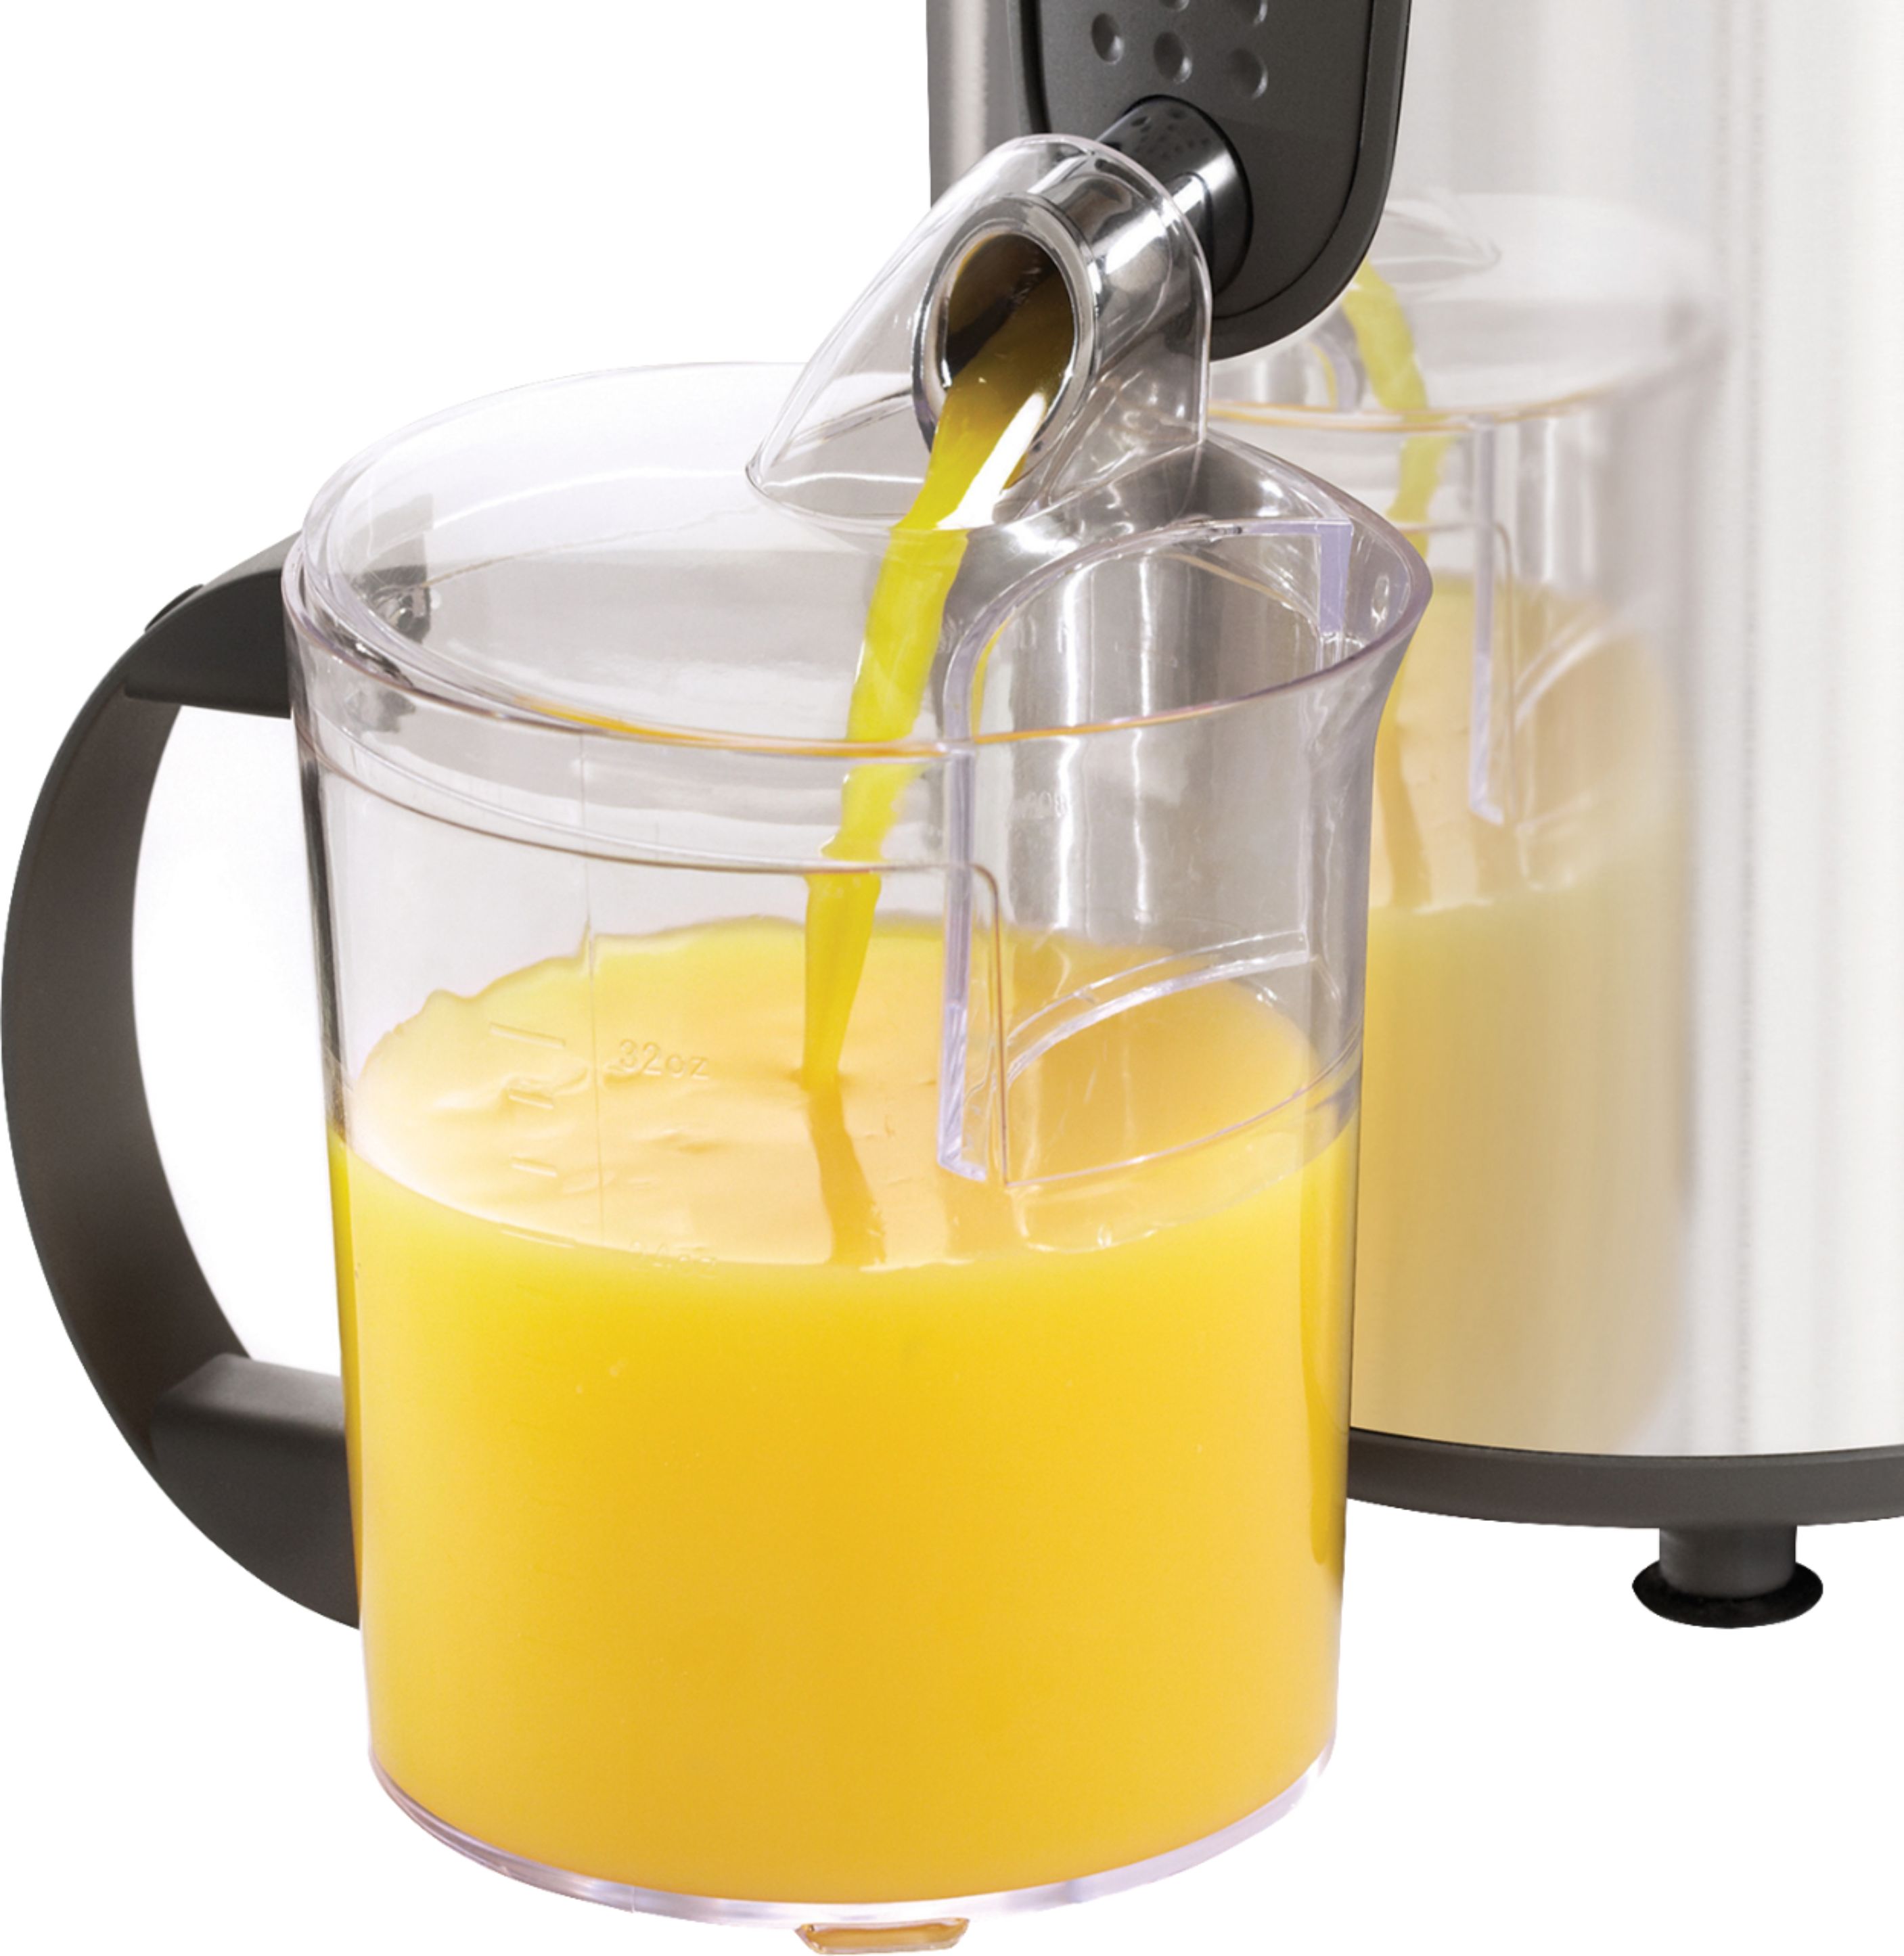 Bella – High Power Juice Extractor $29.99 (Reg. $69.99) at Best Buy!